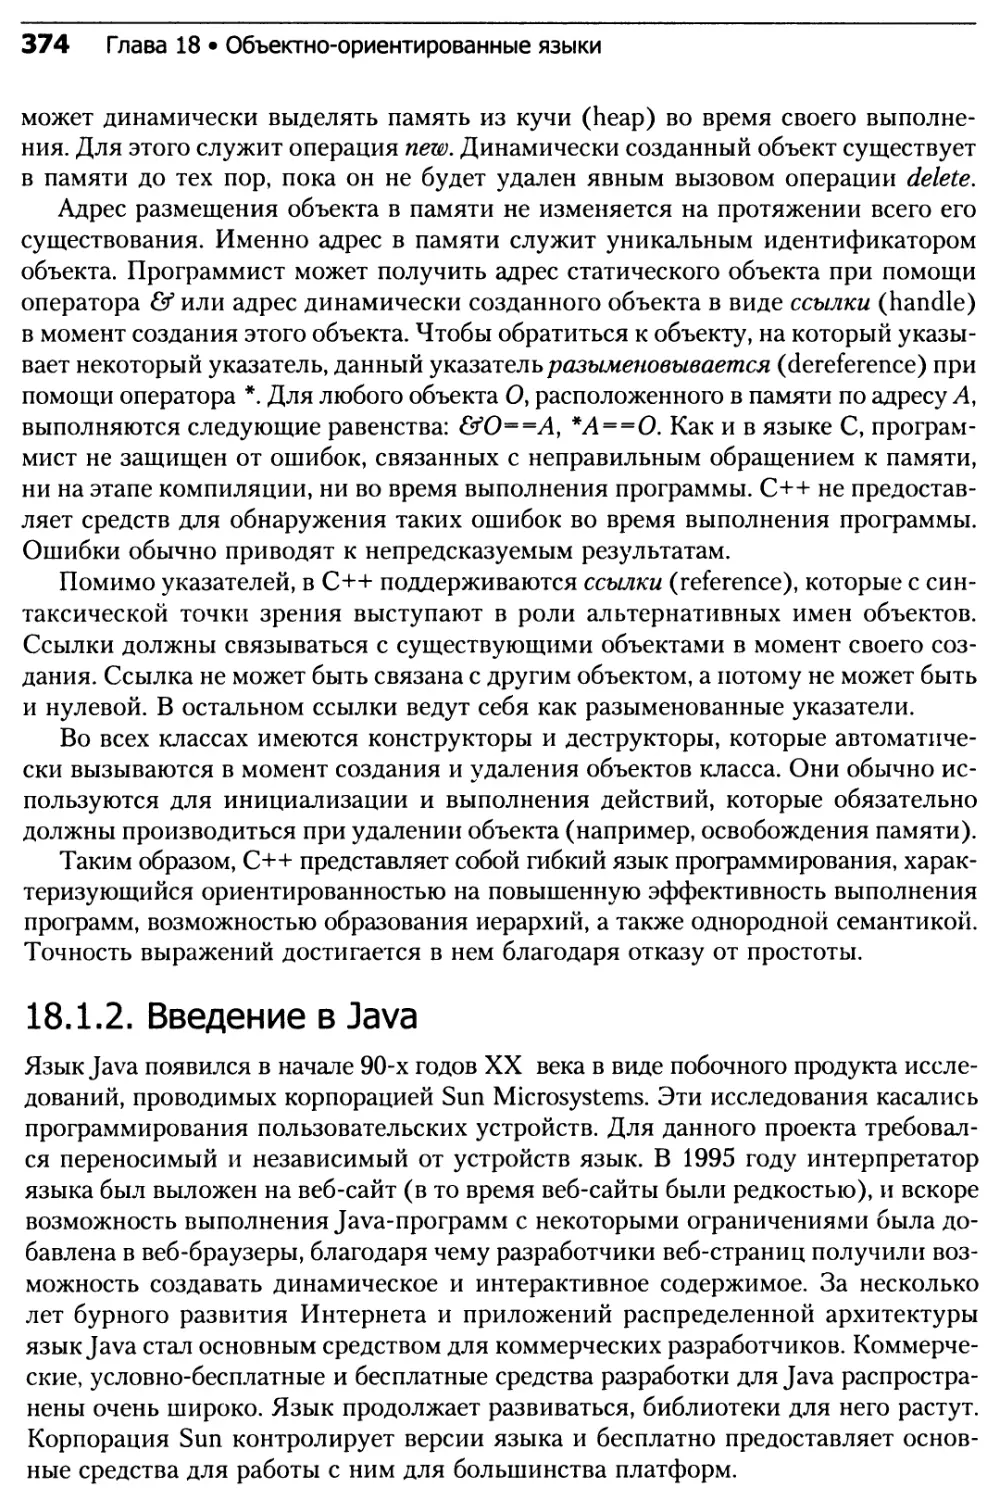 18.1.2. Введение в Java